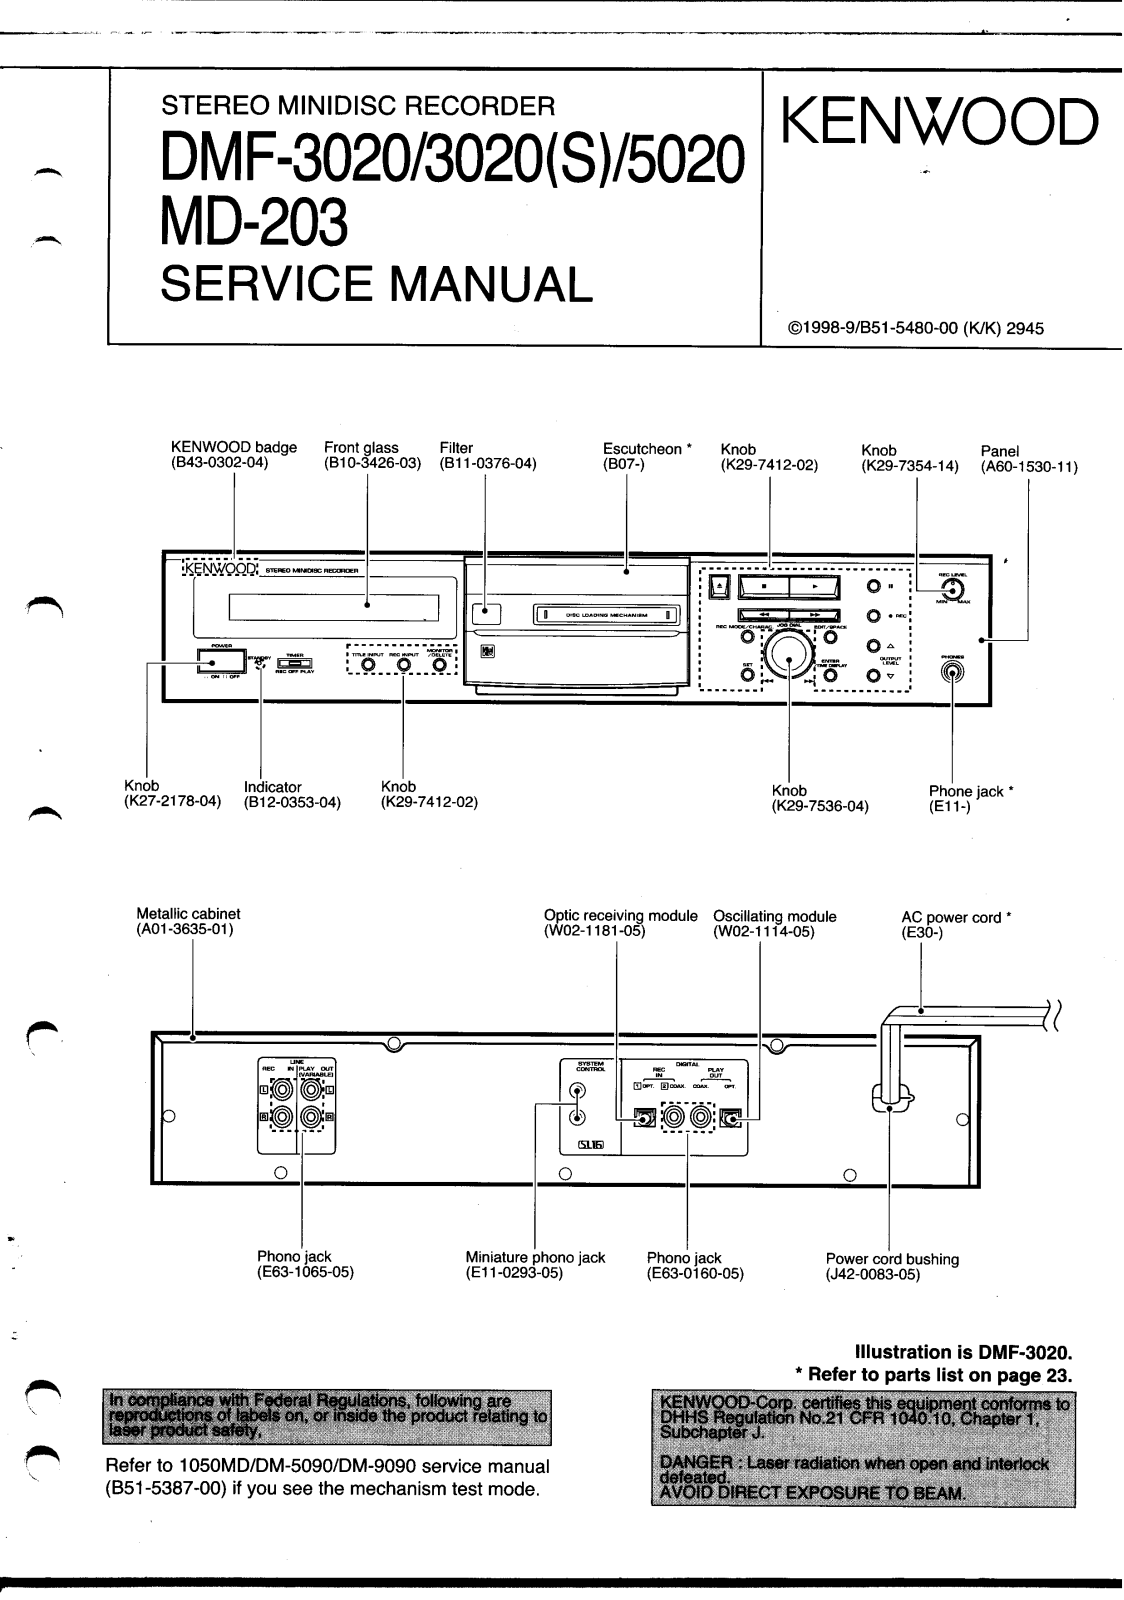 Kenwood DMF-3020, DMF-5020, MD-203 Service Manual